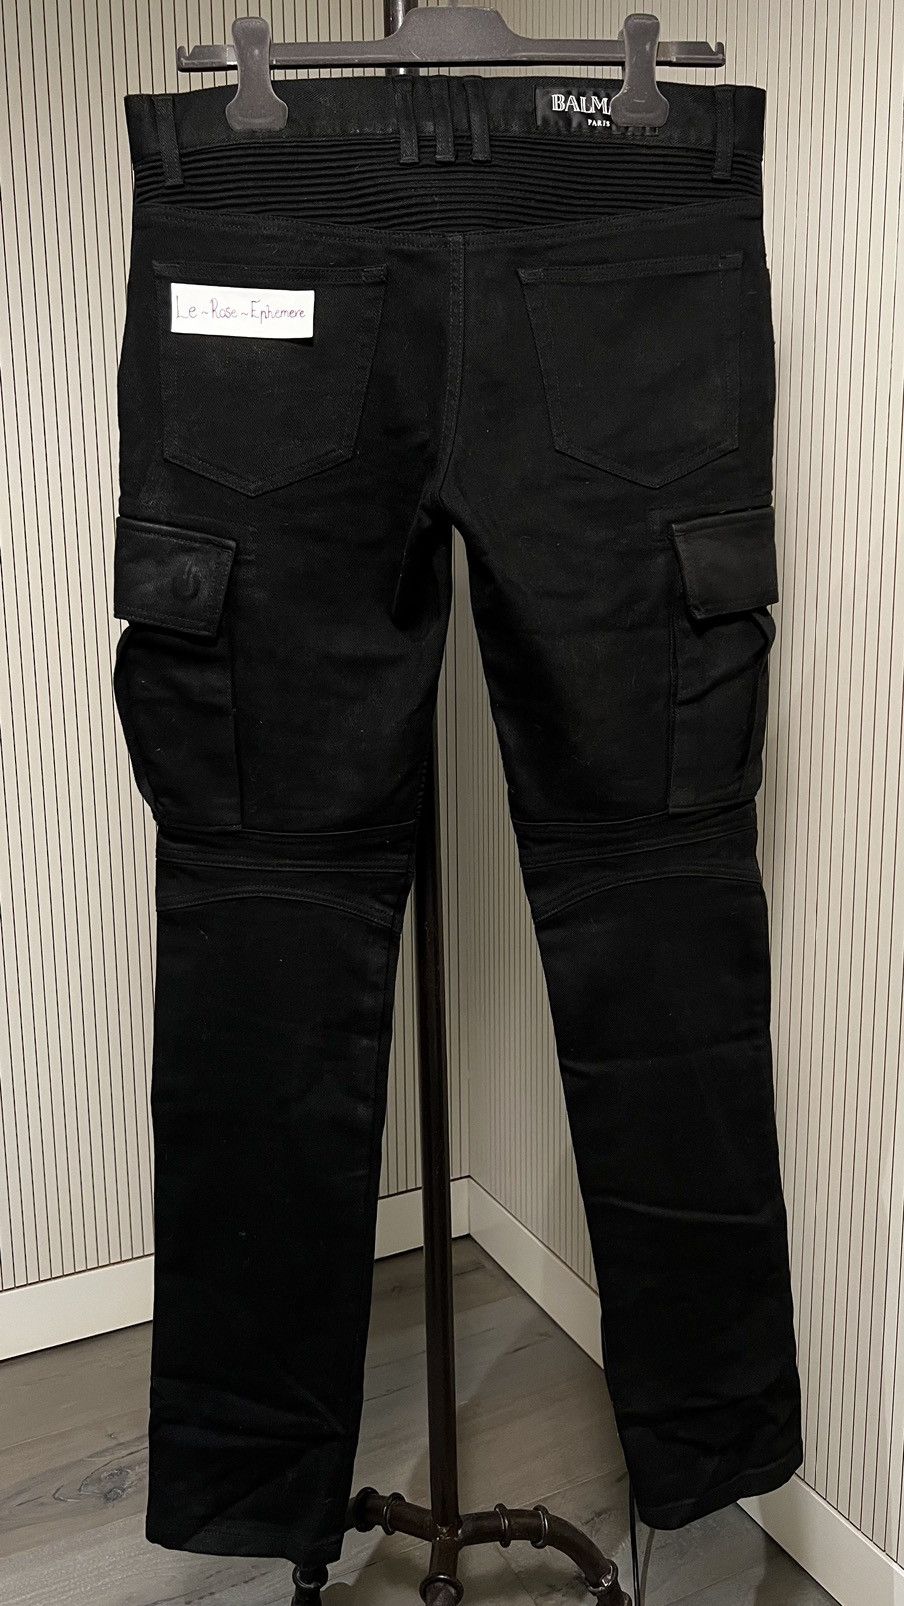 Balmain Balmain Double Zip Black Coated Cargo Biker Pants | Grailed